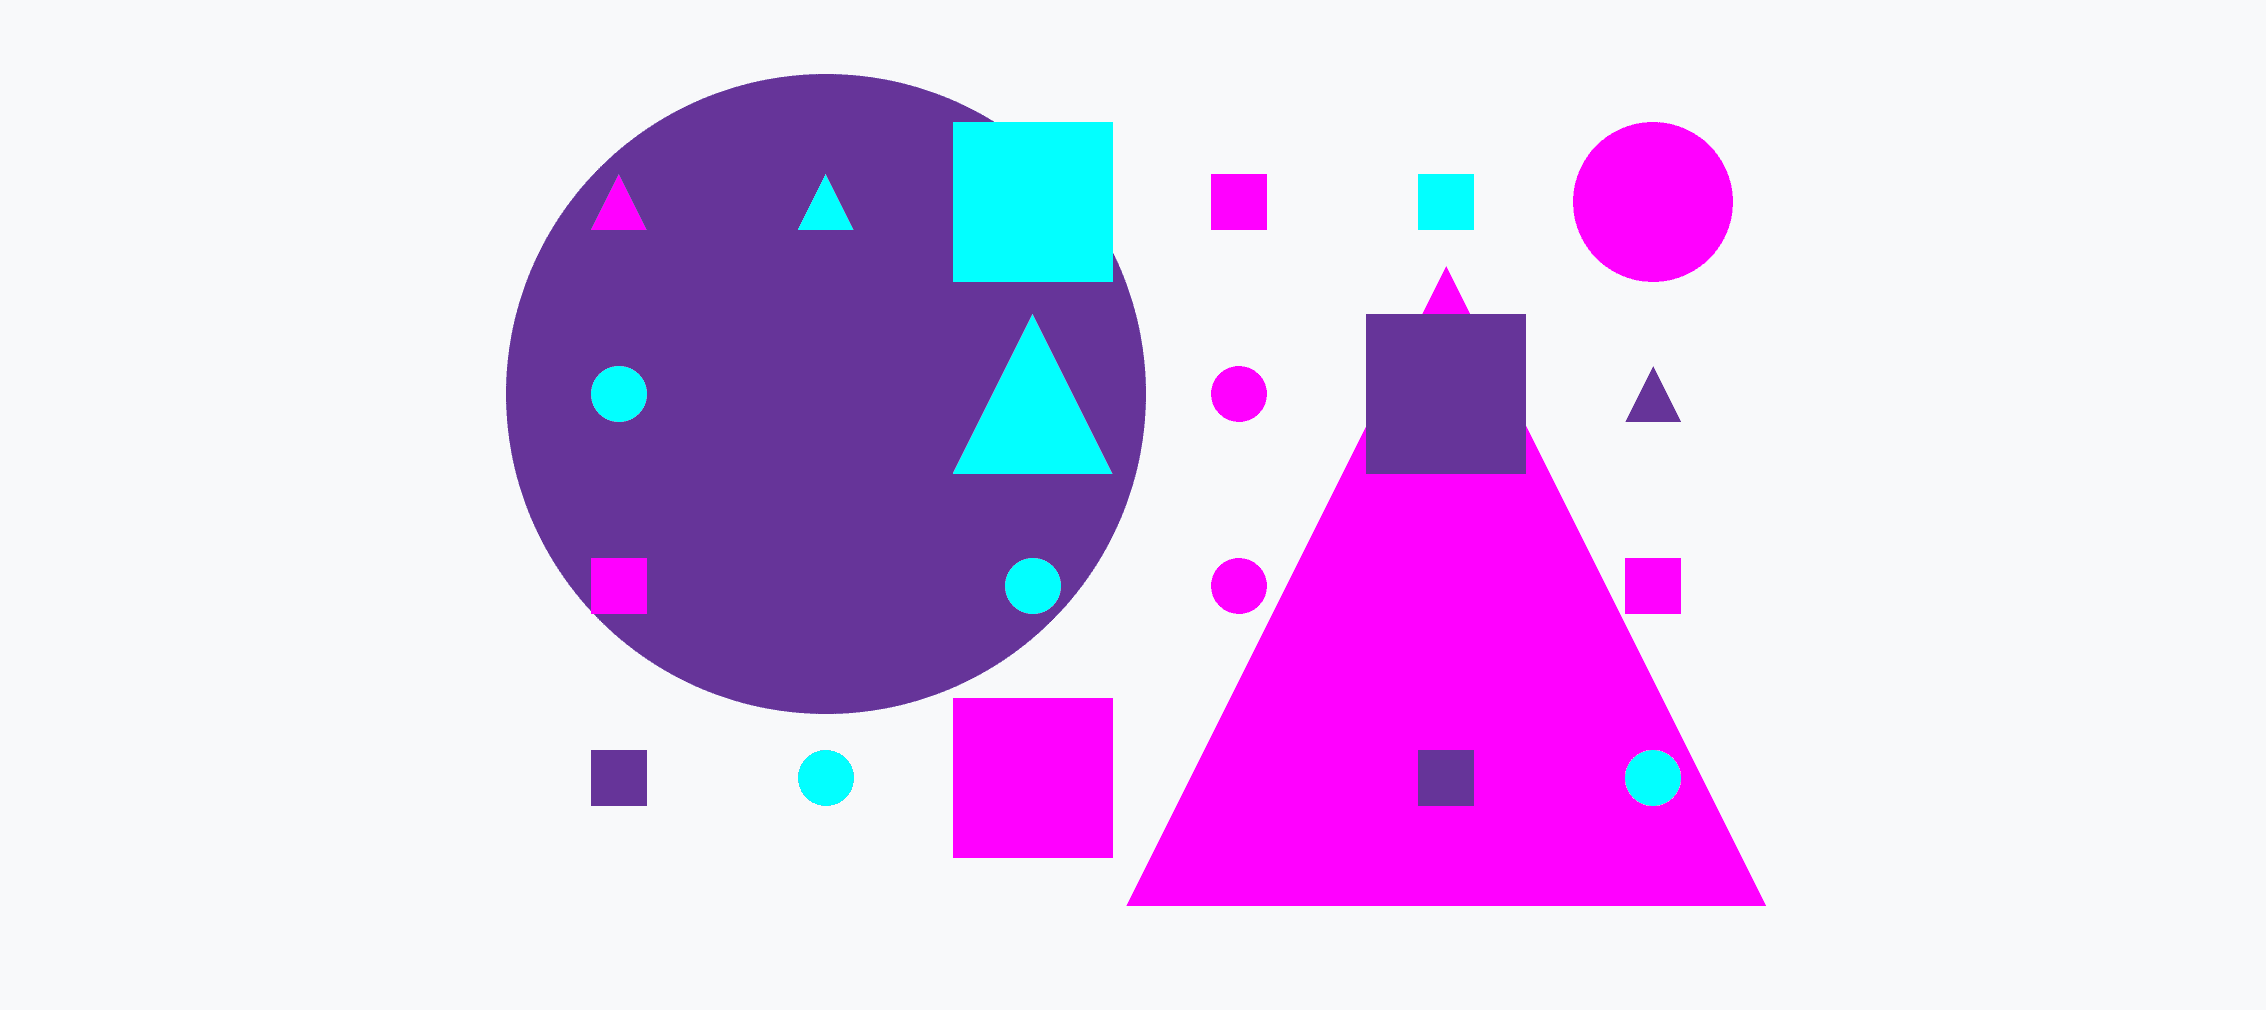 由大、小圓圈、三角形和正方形組成的彩色格線。